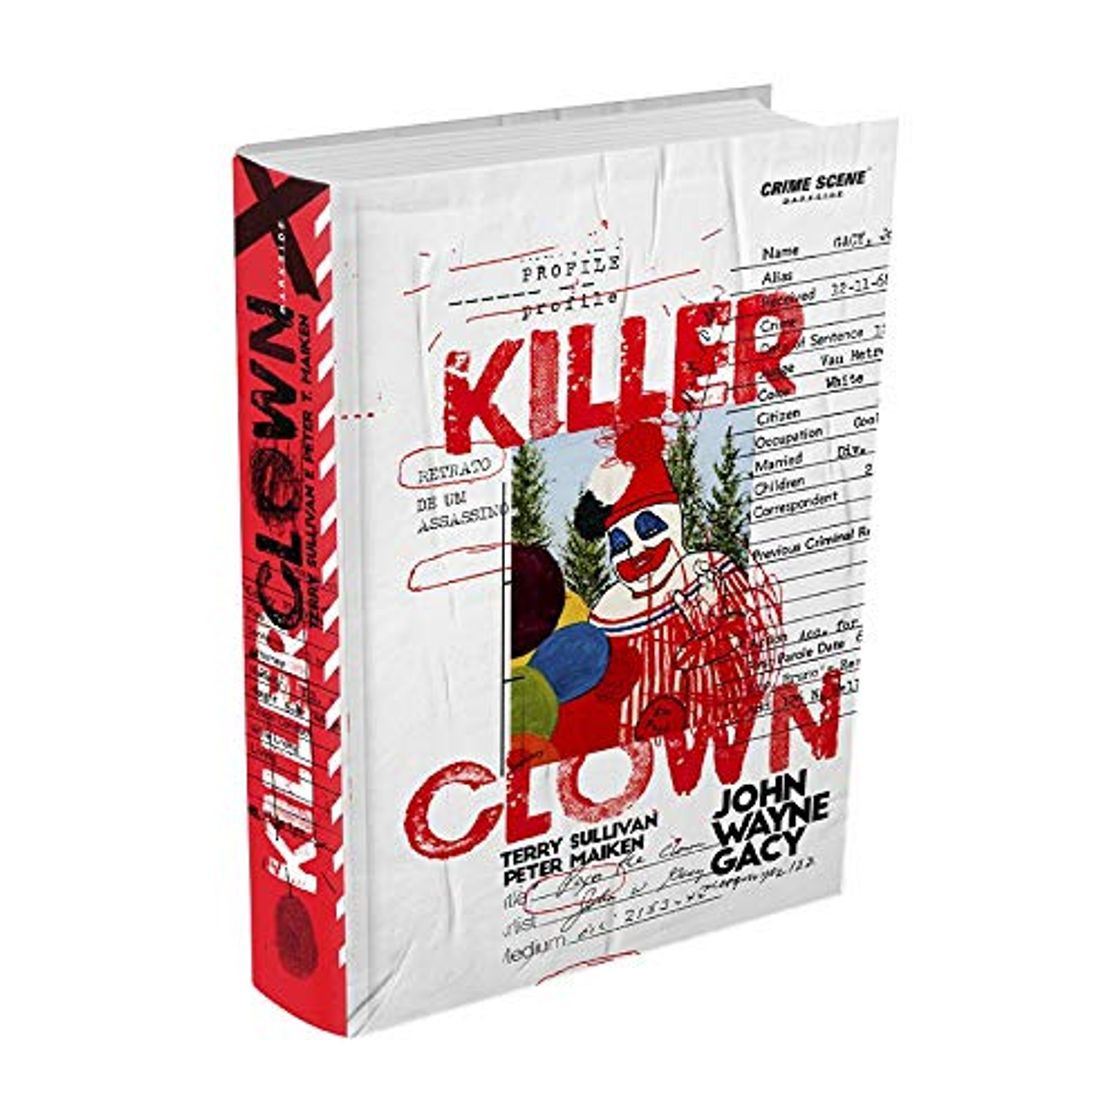 Killer Clown Profile - Retrato de um Assassino